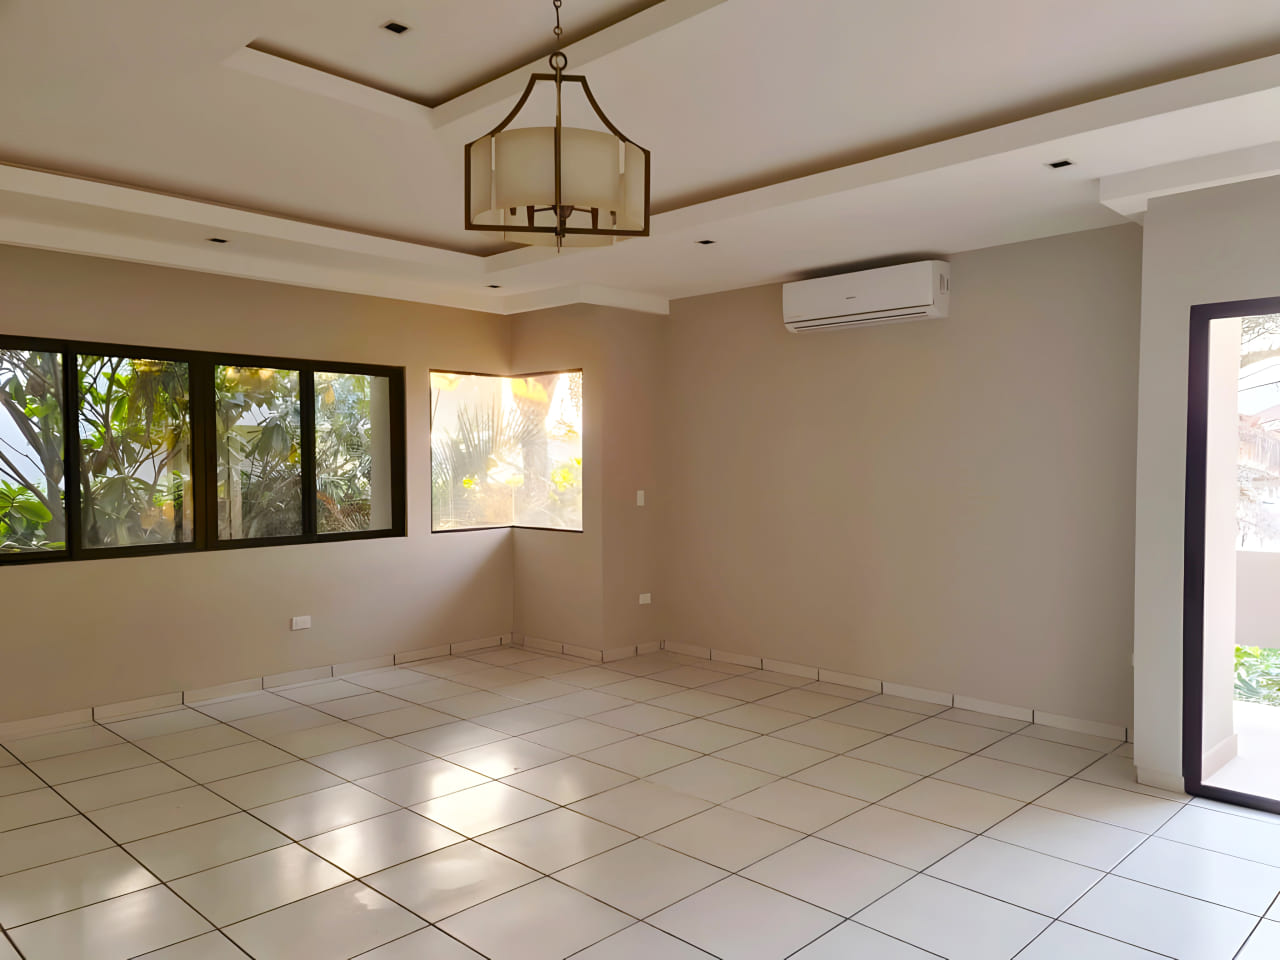 Habitación amplia con aire acondicionado, lámpara colgante, puerta corrediza con piso porcelanato y techo color blanco.